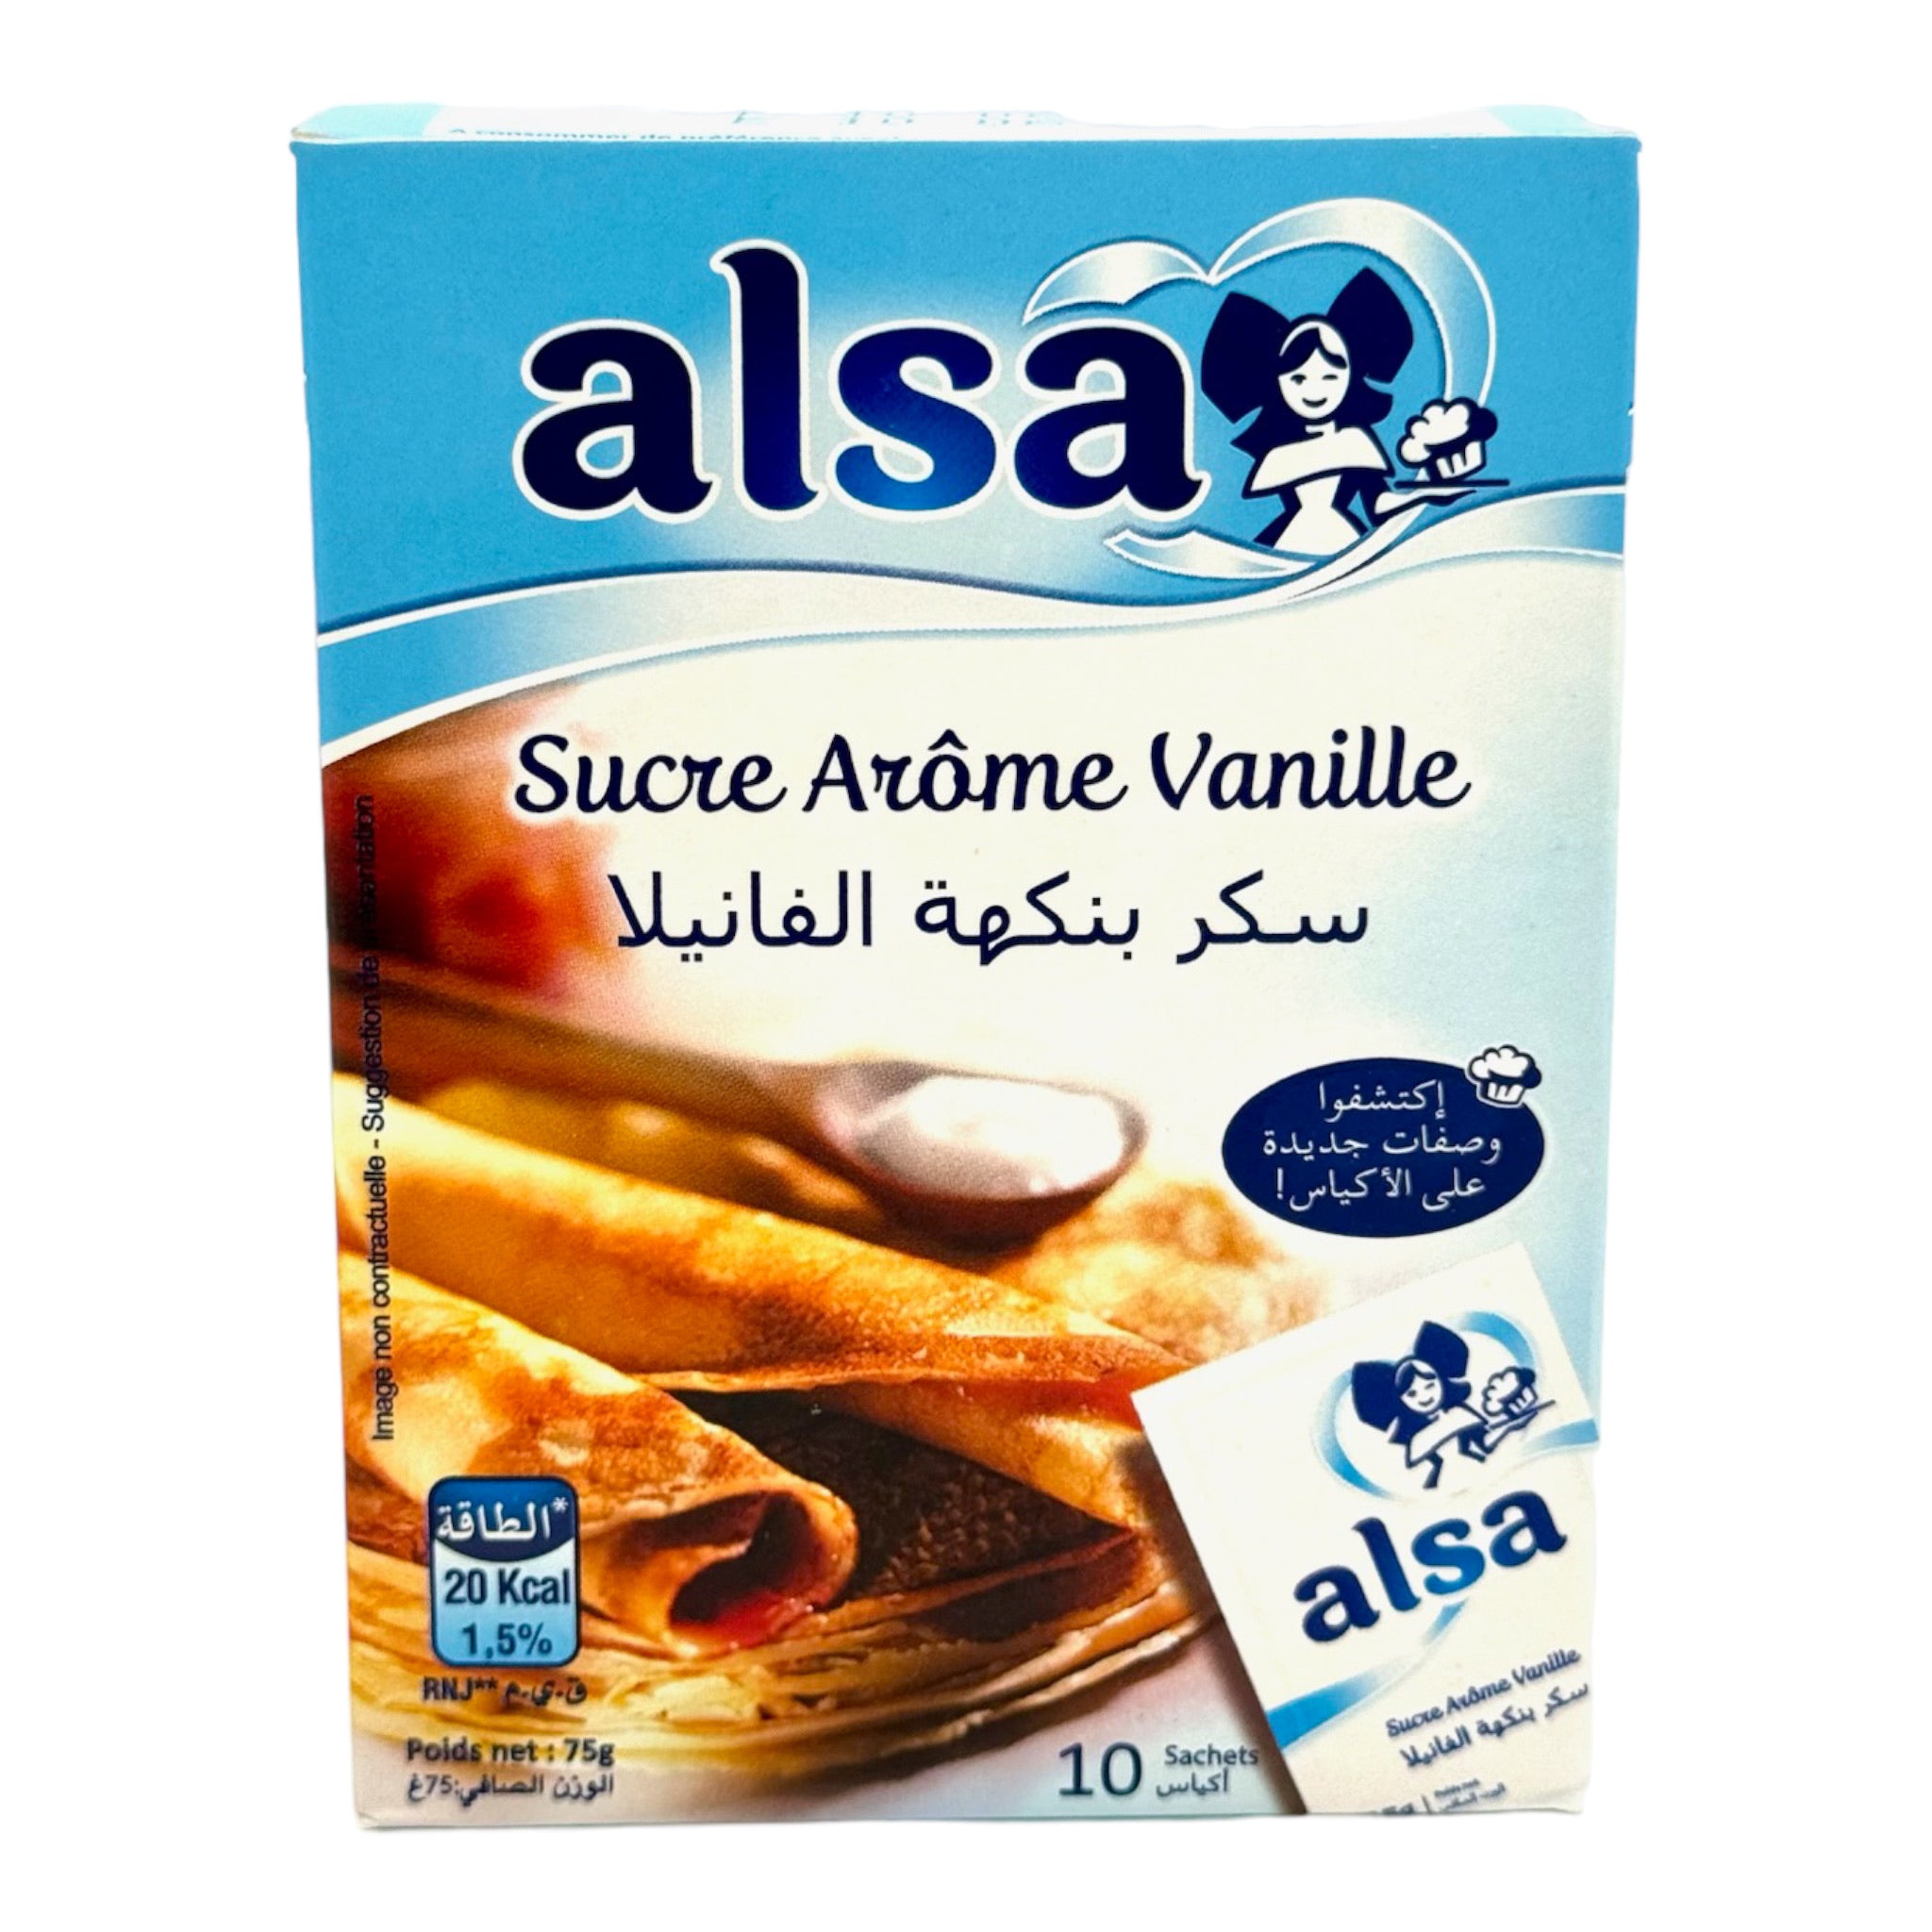 Alsa vanilla flavored sugar sucre arome vanille from morocco